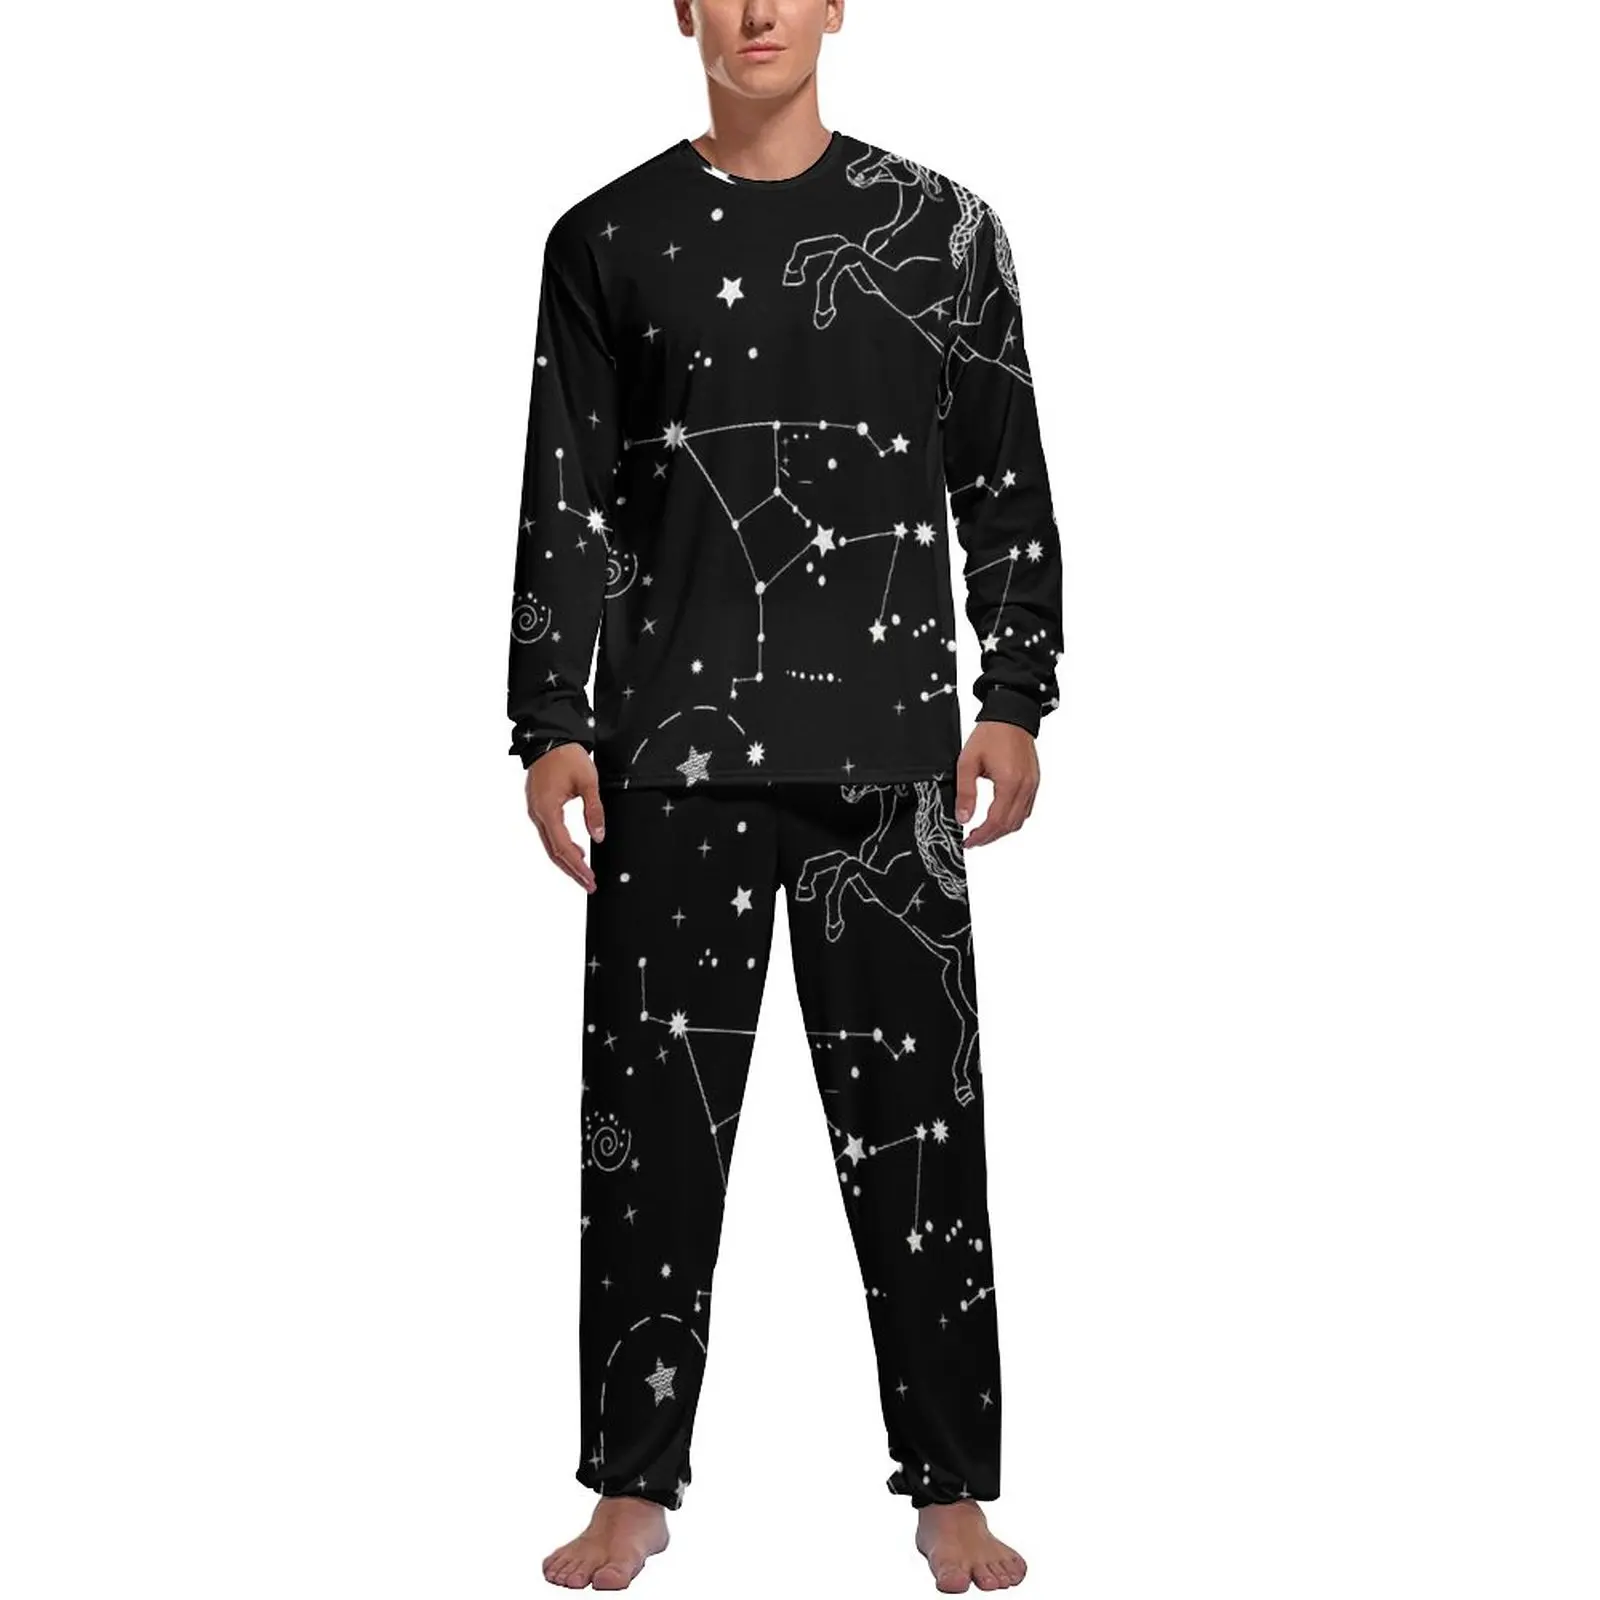 

Unicorn Pajamas Men Stars Print Constellation Trendy Nightwear Winter Long Sleeve 2 Pieces Leisure Graphic Pajamas Set